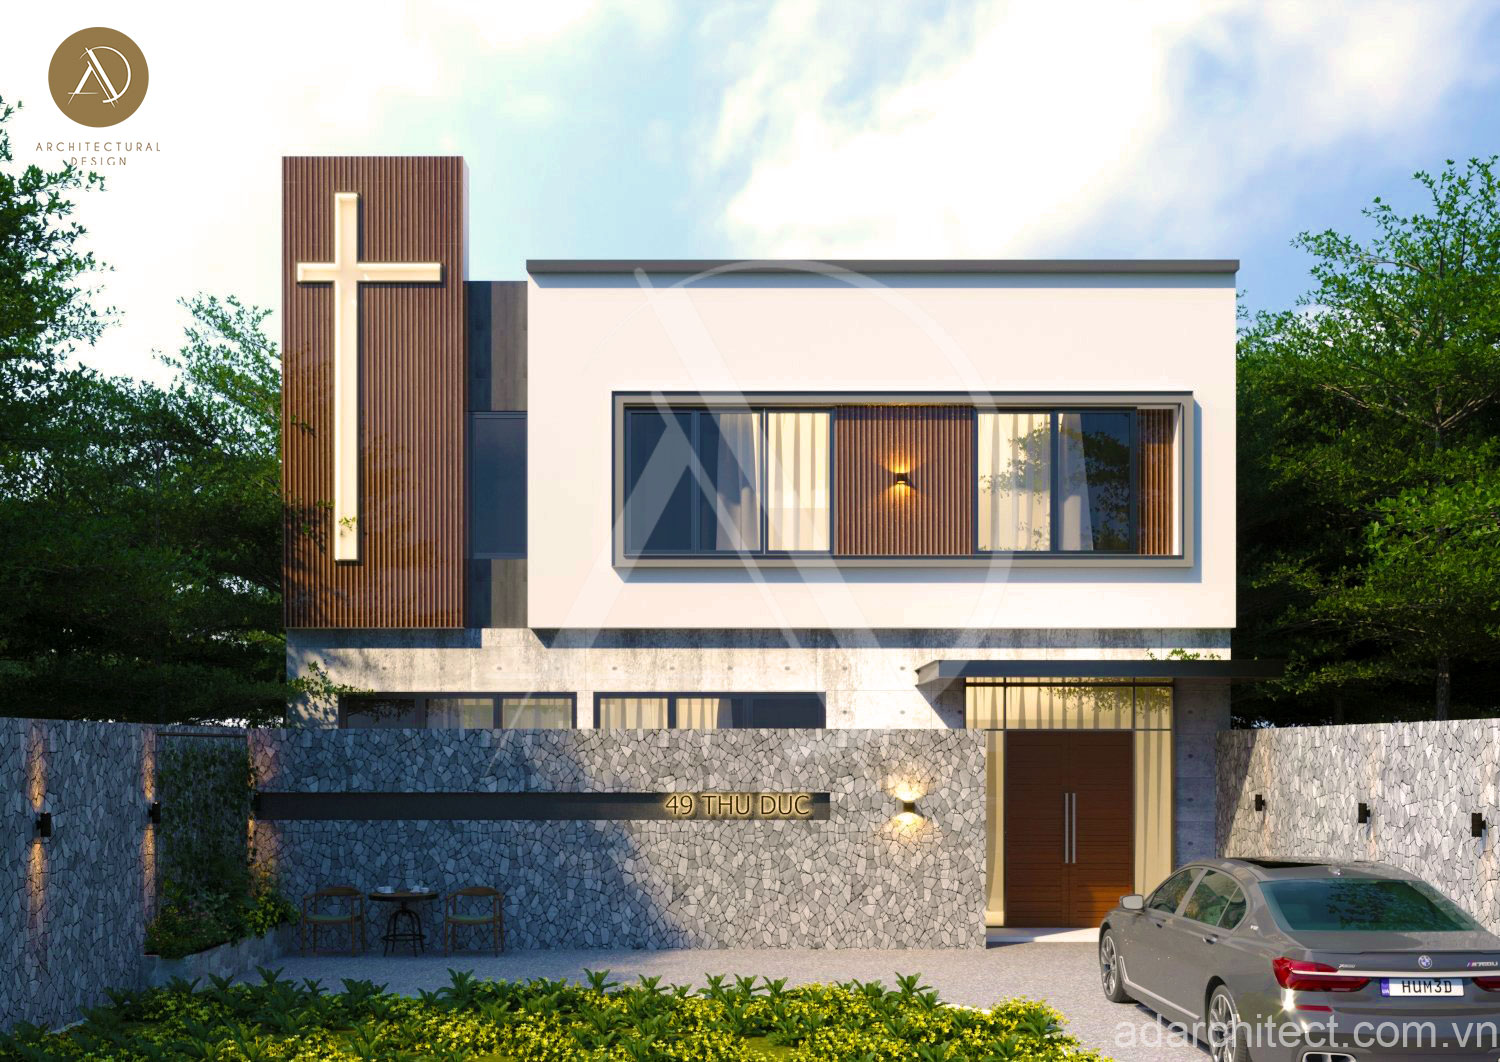 công trình nhà Nguyện, thiết kế công trình tôn giáo chất lượng